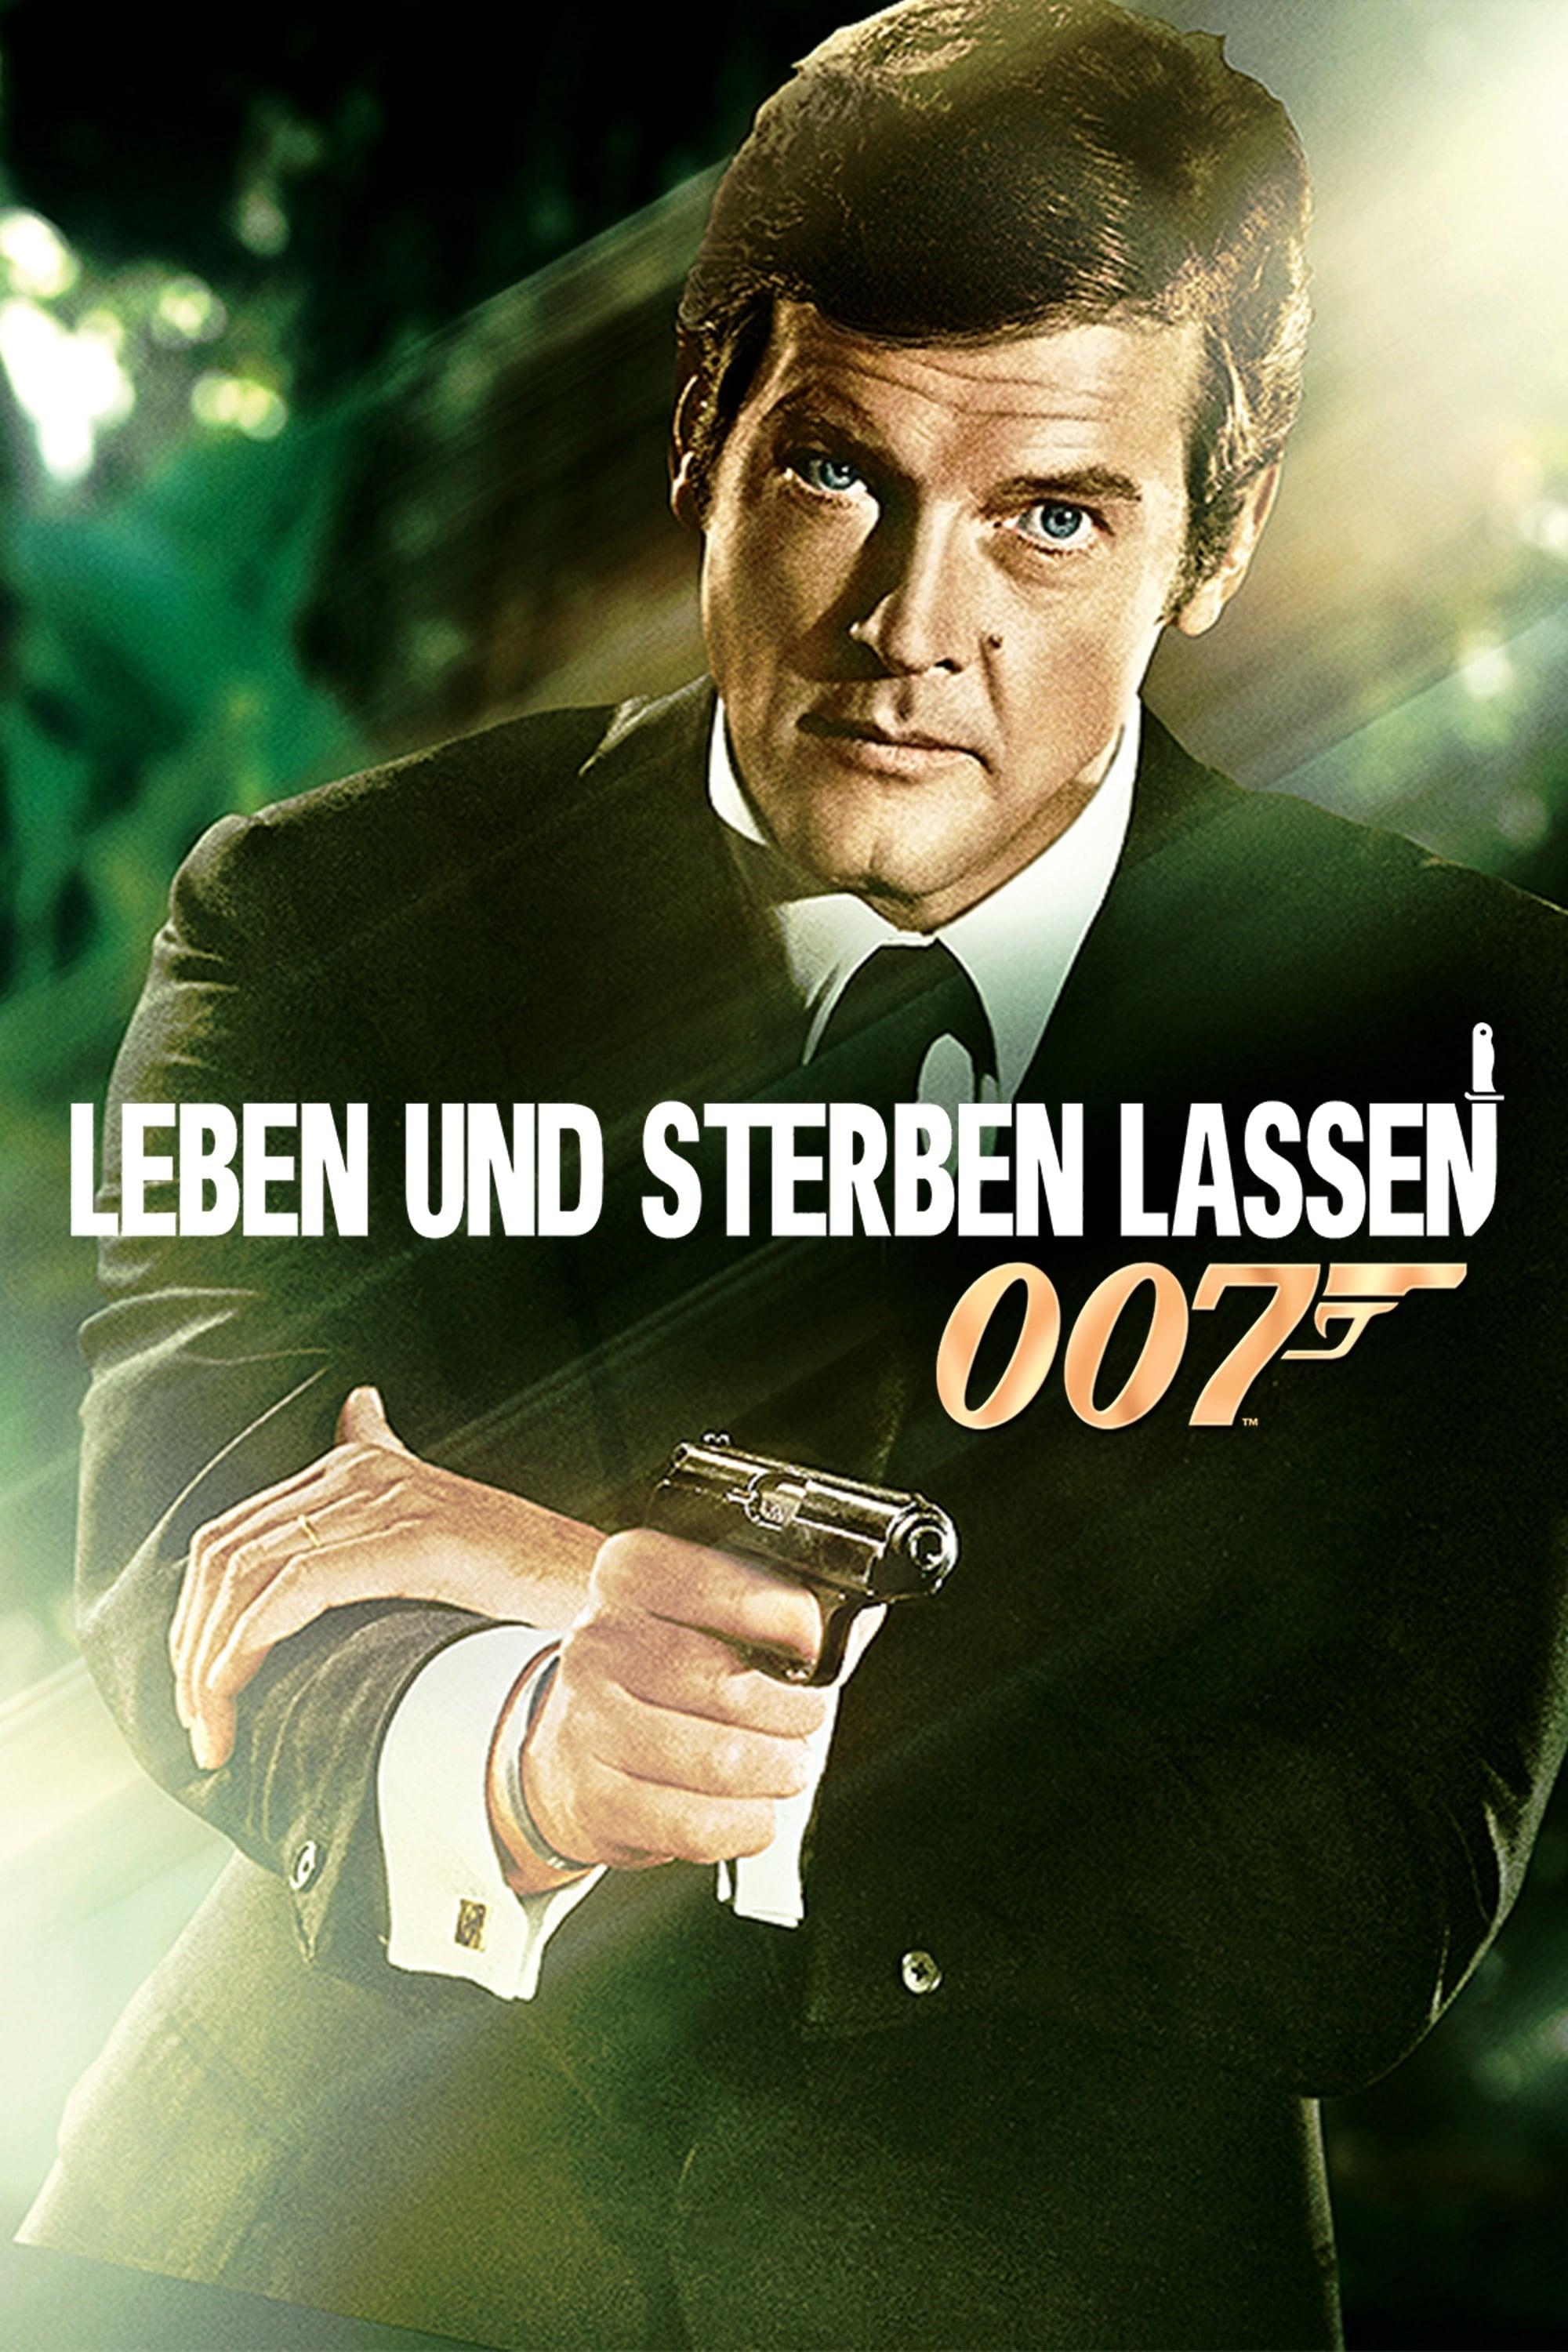 James Bond 007 - Leben und sterben lassen poster